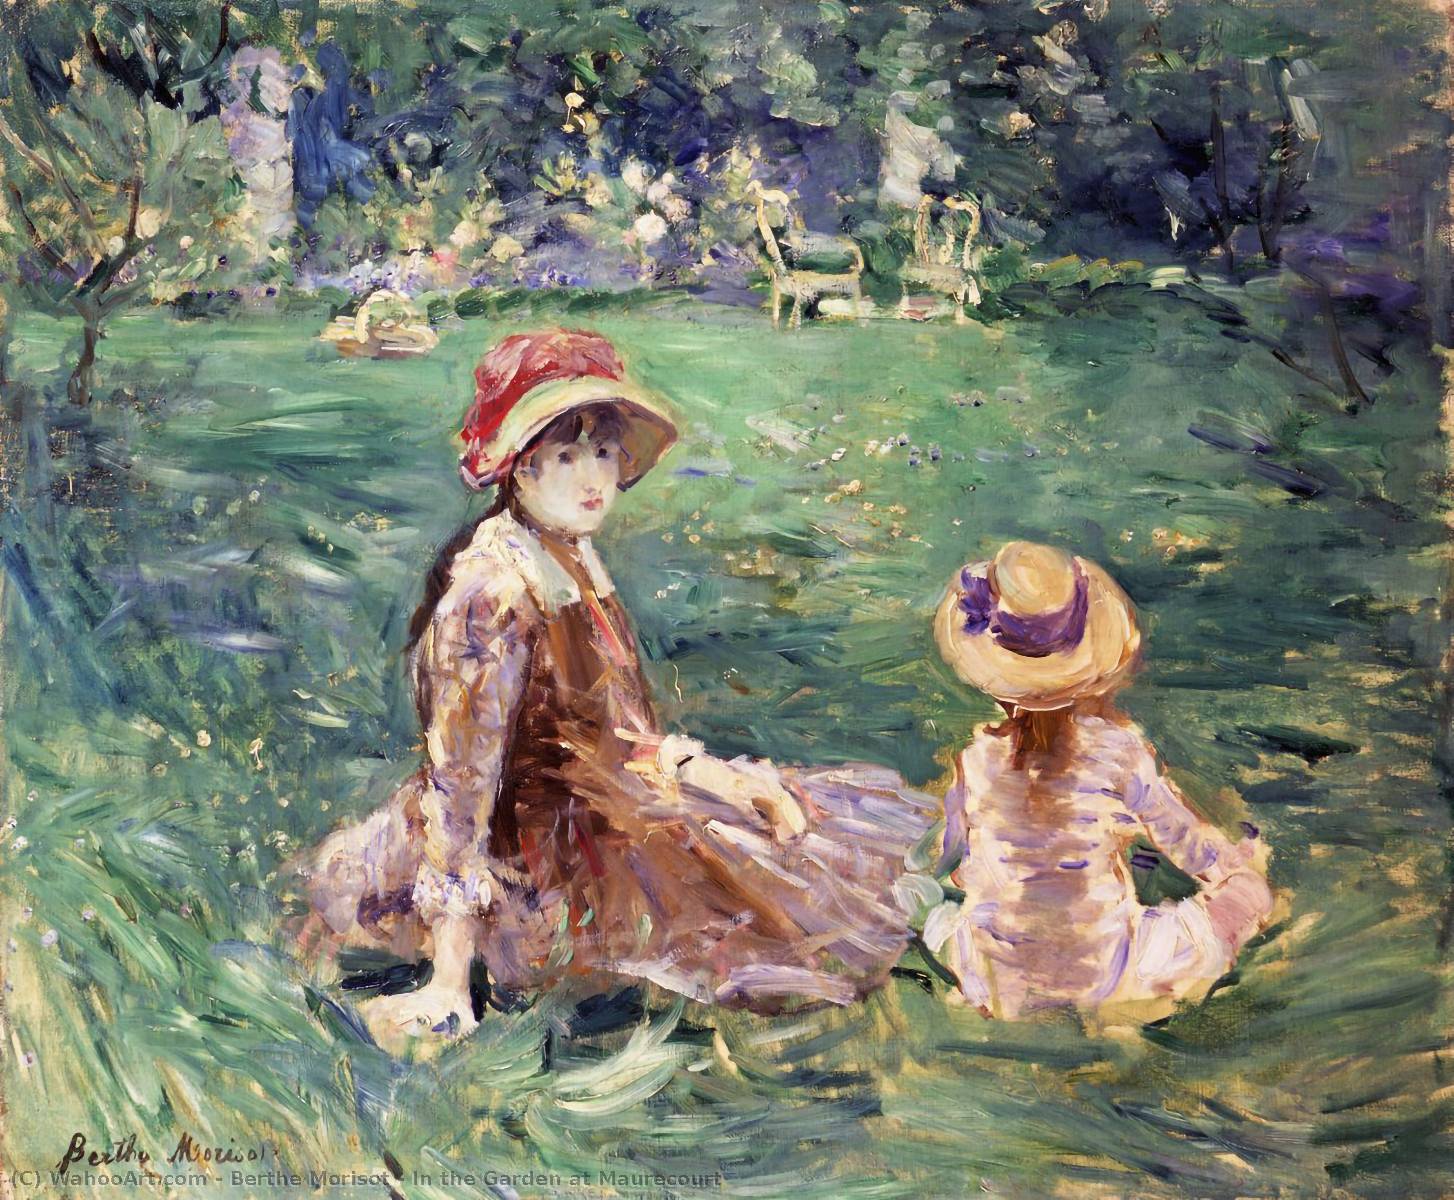 Berthe Morisot In the Garden at Maurecourt